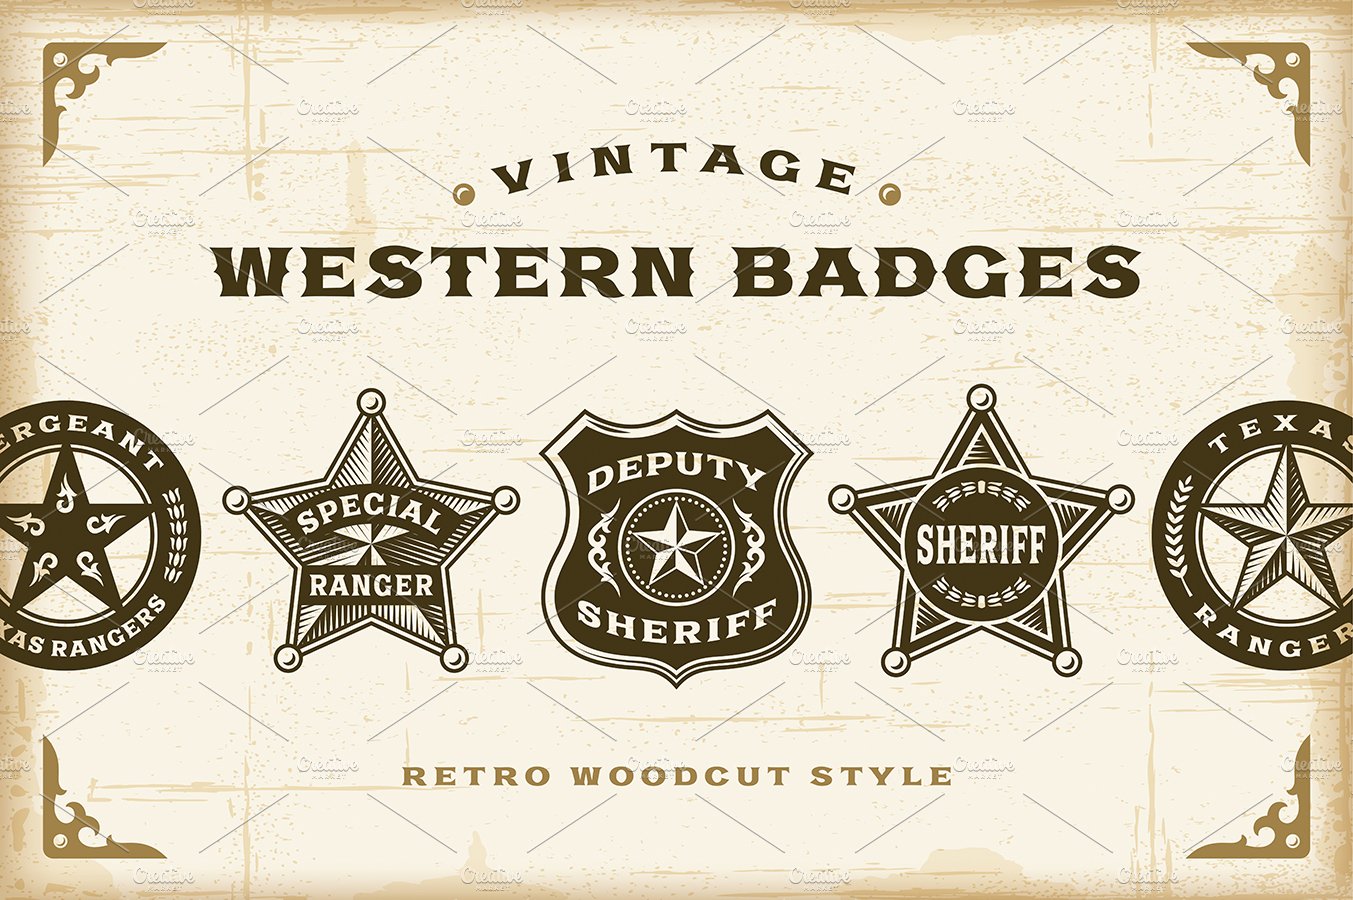 Vintage Western Badges Set cover image.